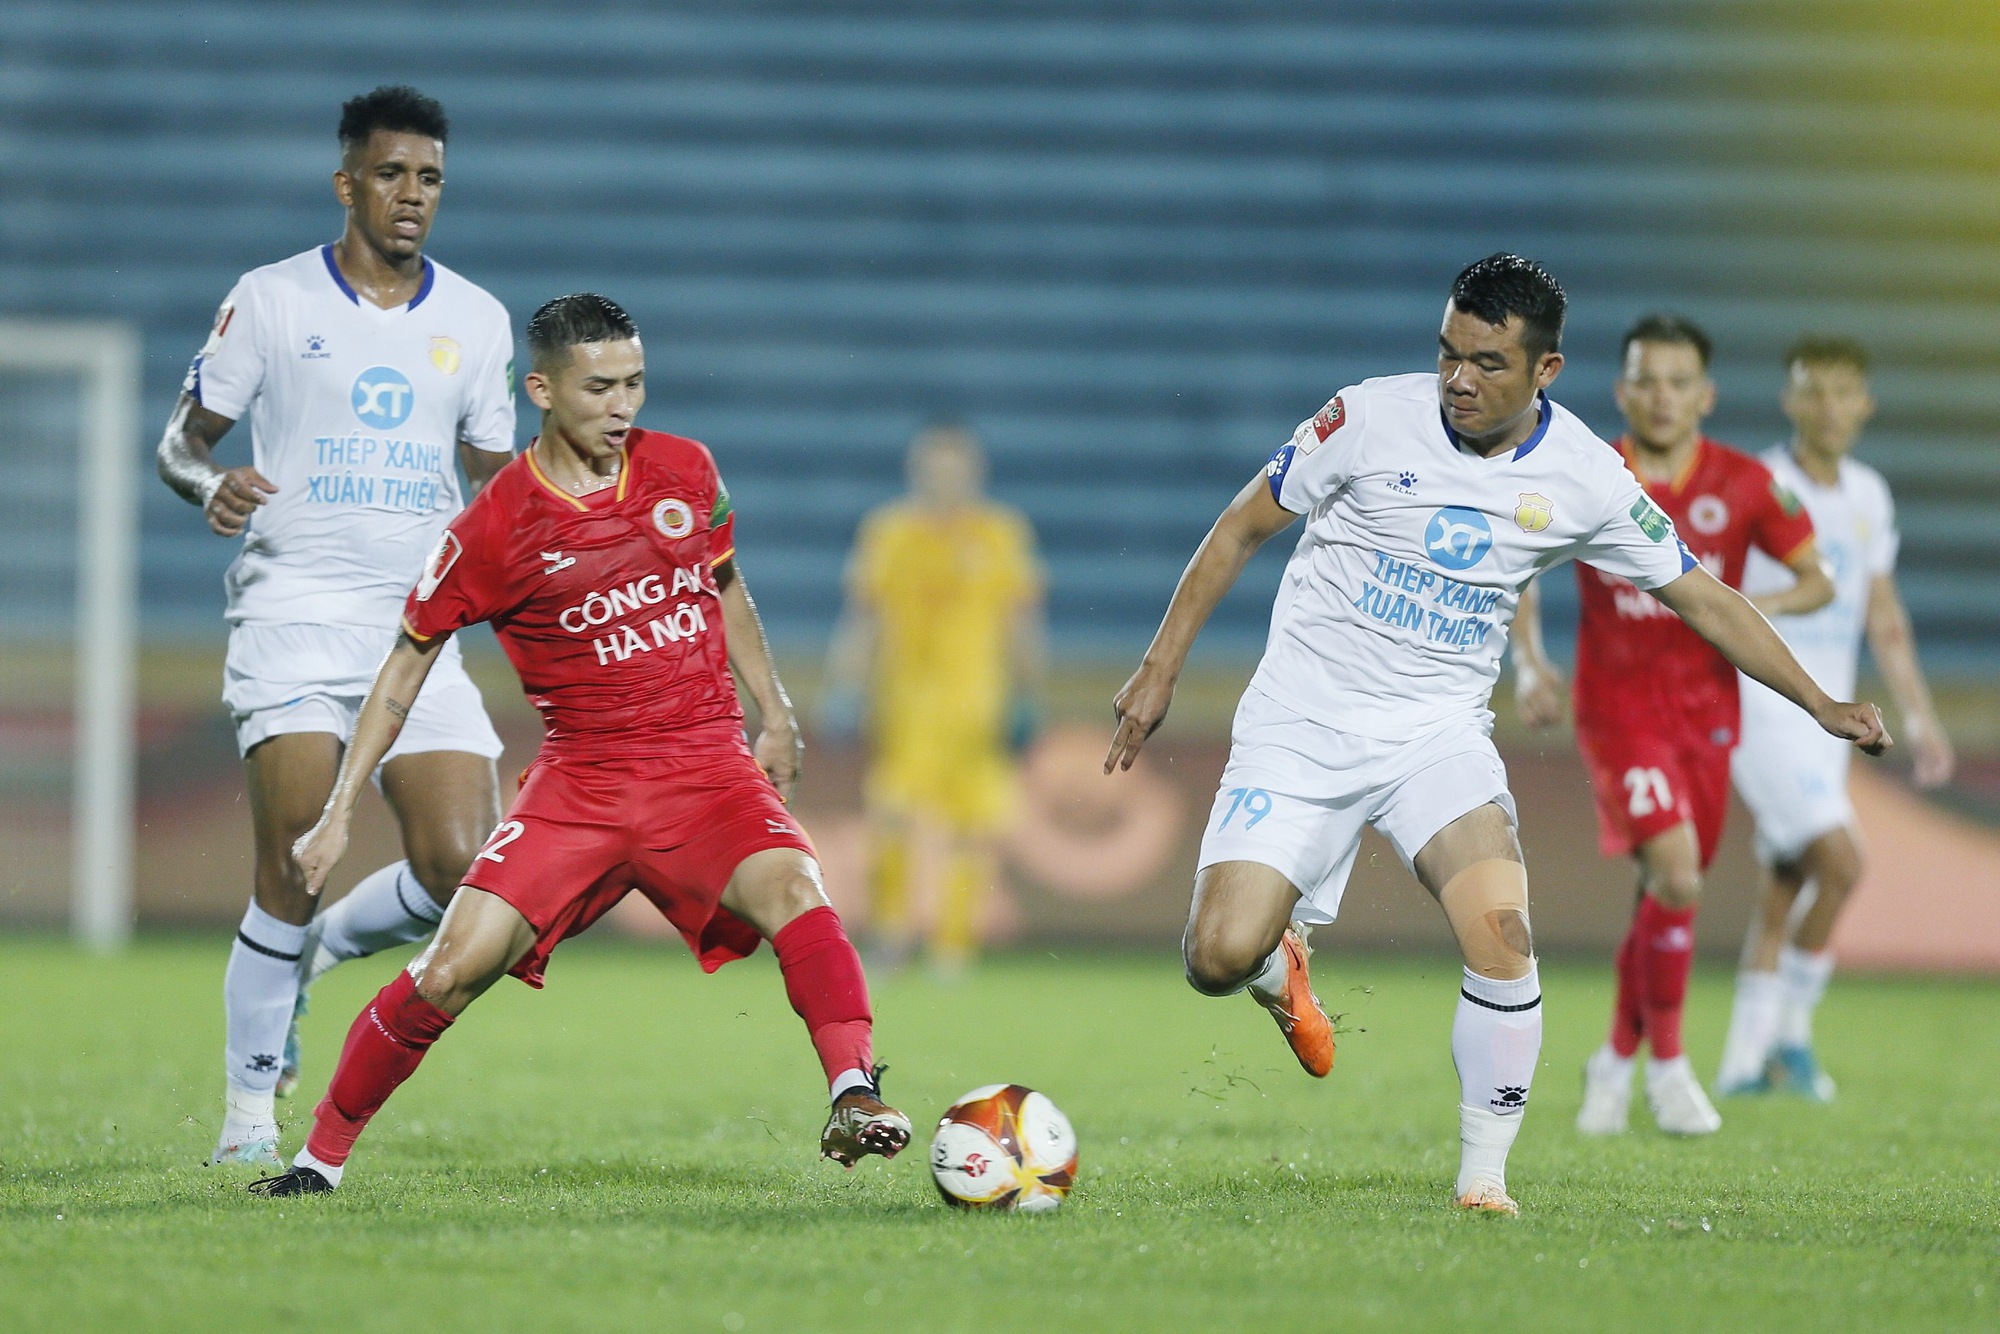 CLB Nam Định tiếp tục dùng nhiều cầu thủ trẻ ở trận gặp đội Hải Phòng - Ảnh 1.